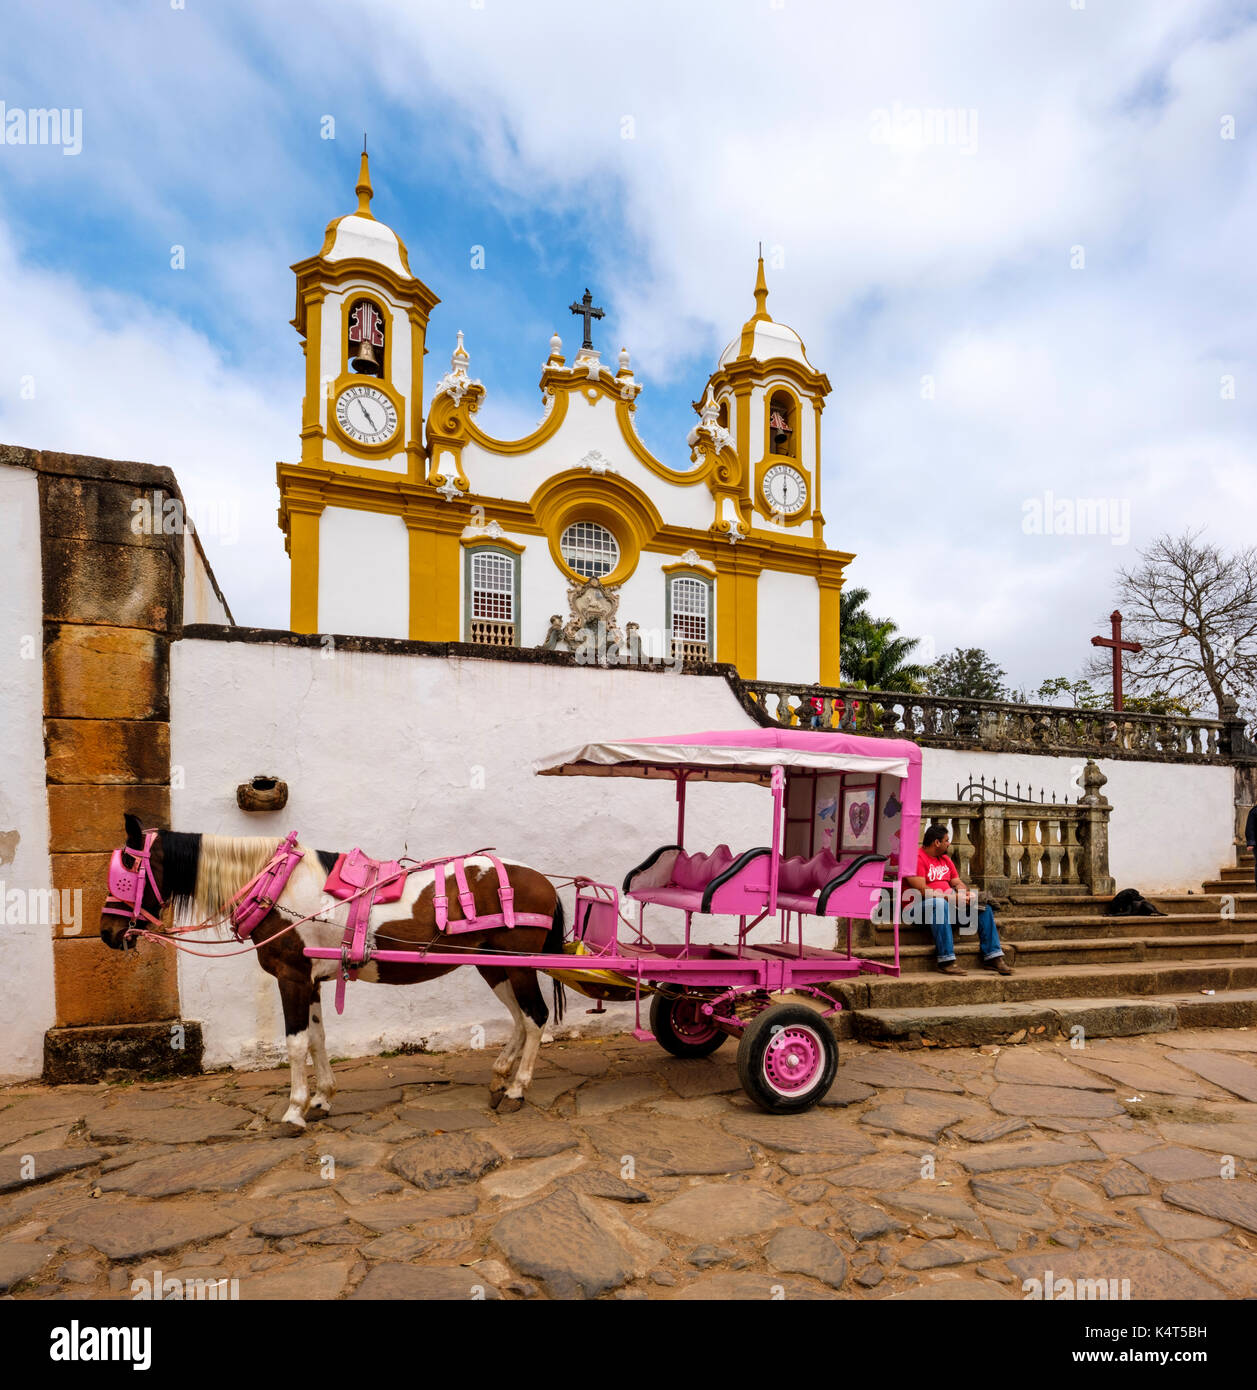 L'architecture baroque, en calèche à Matriz de Santo Antonio, la plus ancienne de l'église catholique principale et temple de Tiradentes, Minas Gerais, Brésil. Banque D'Images